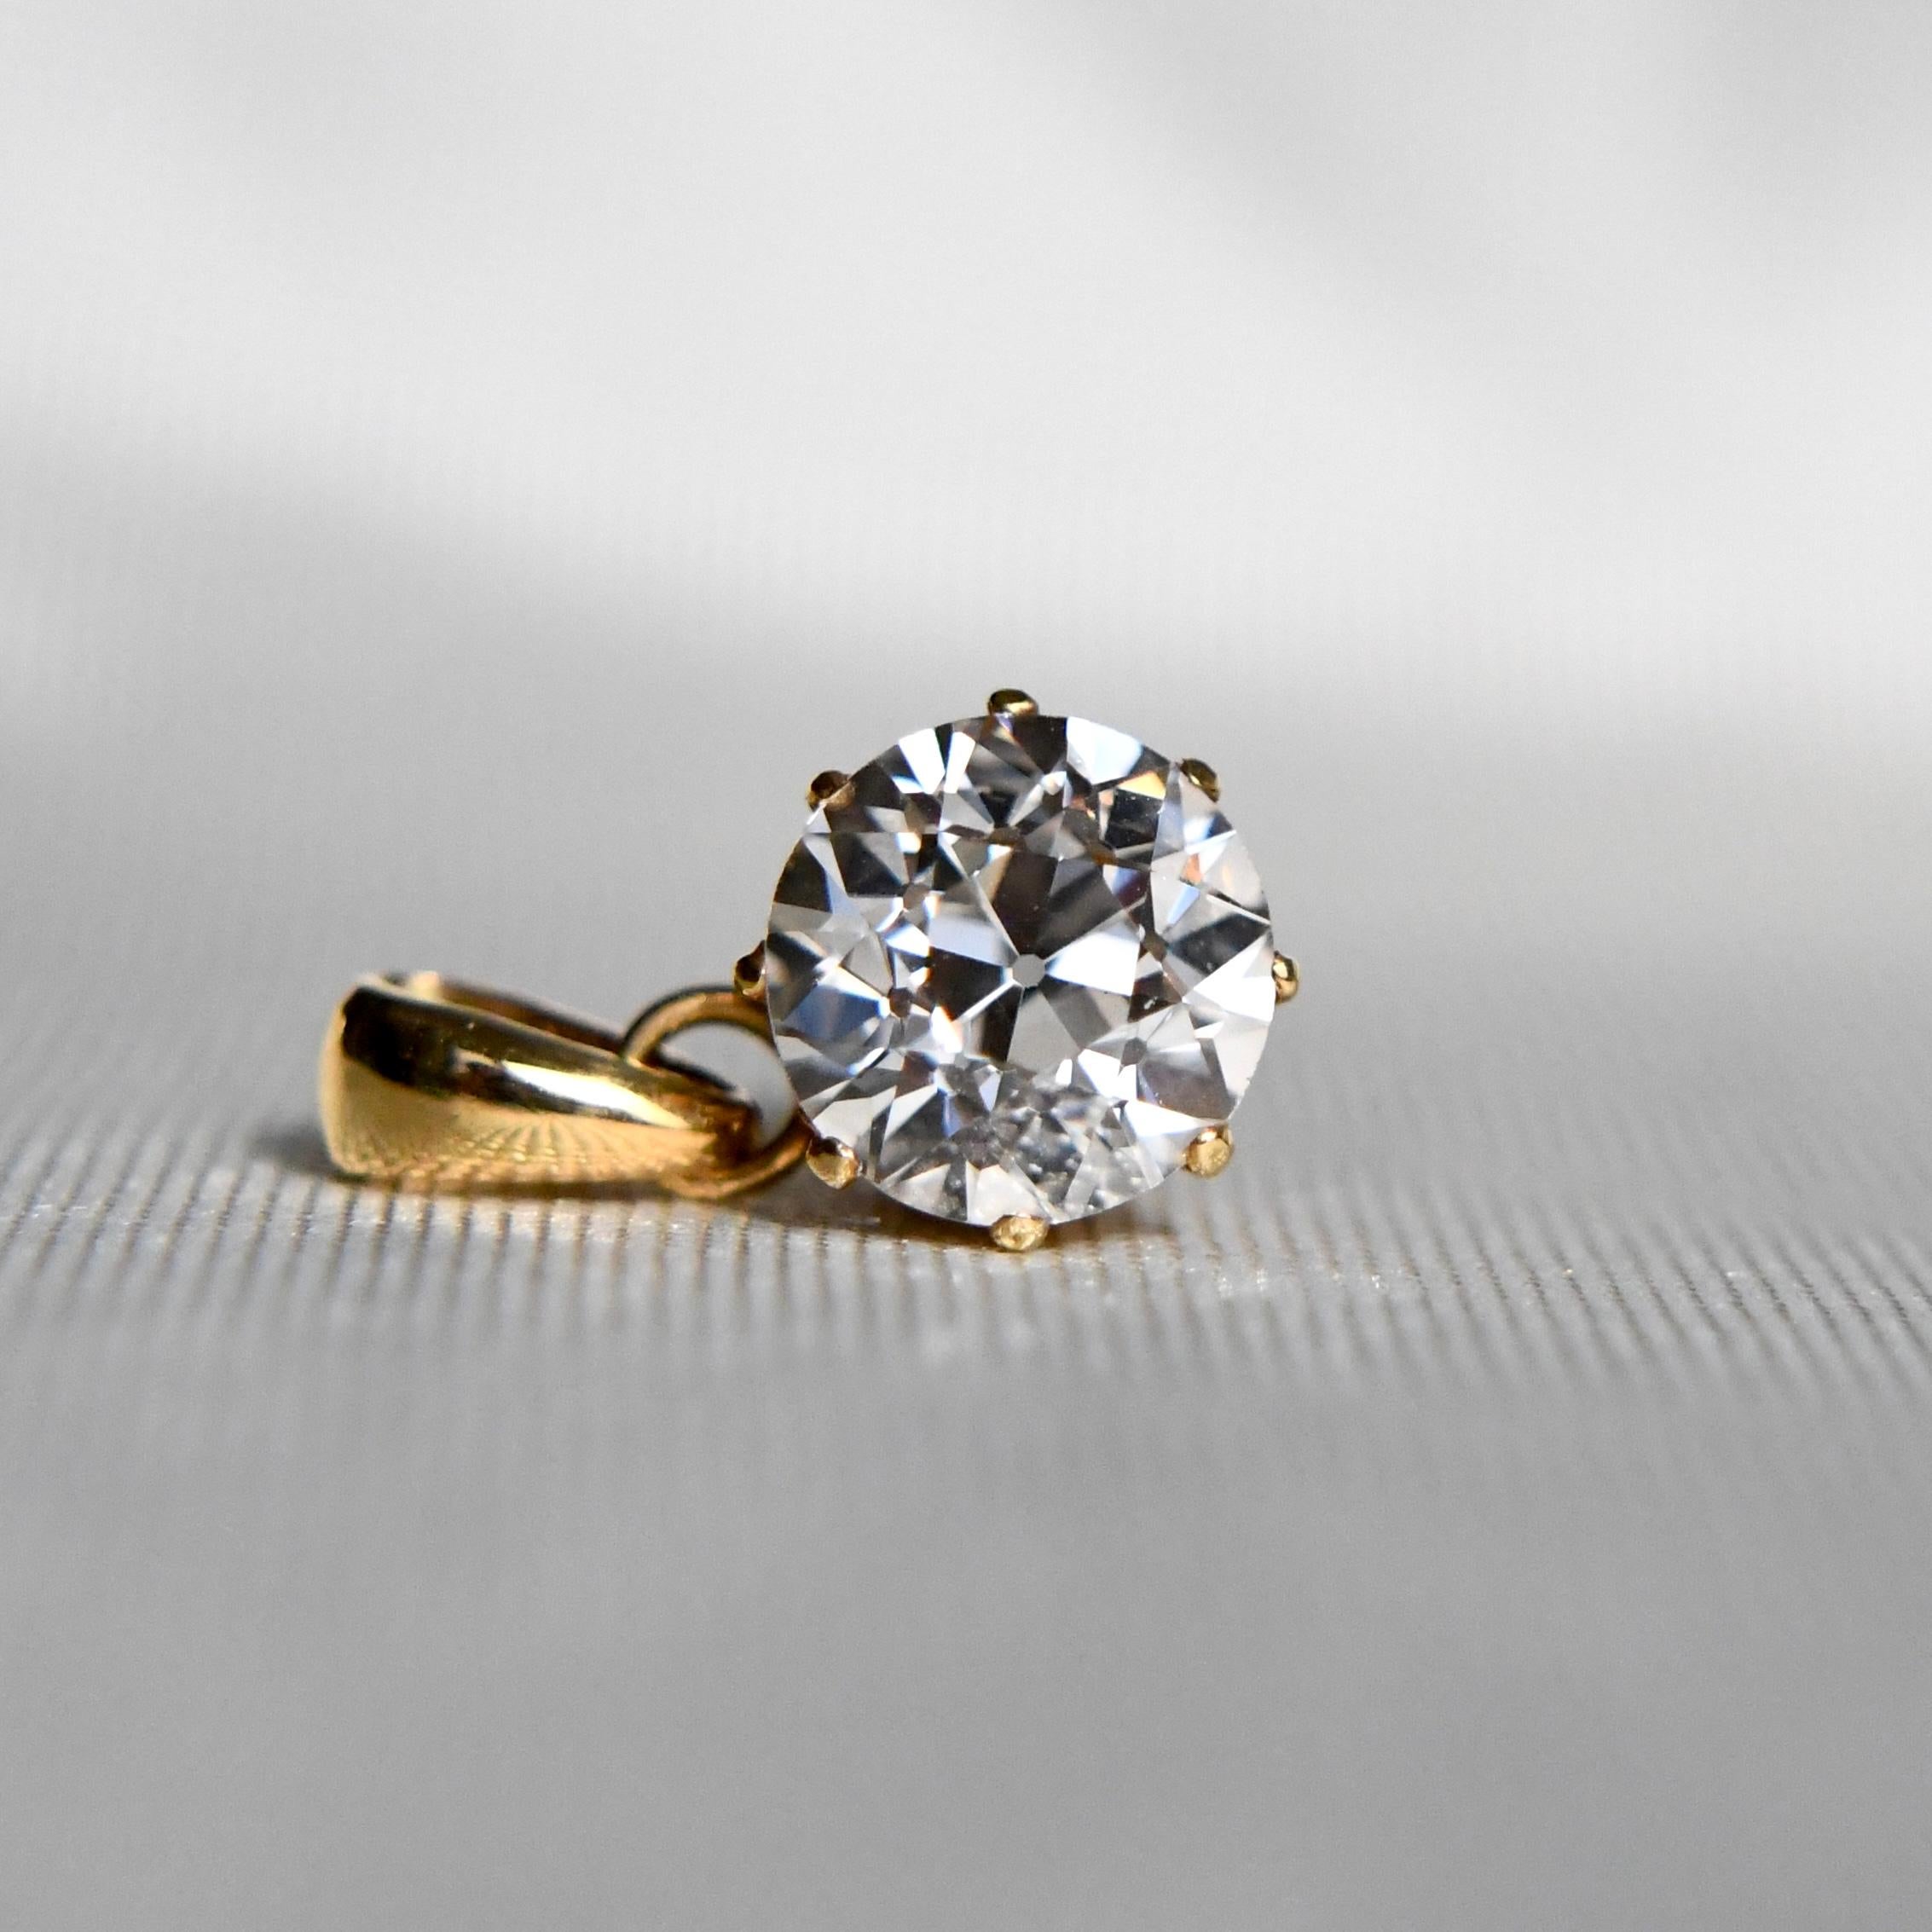 Ce diamant est serti dans sa monture d'origine, fabriquée en Allemagne vers 1890. 
La caution a été ajoutée récemment.

Le diamant est certifié GIA.

- Un diamant ancien de taille européenne, 7,38 - 7,53 x 4,78mm/ 1,62ct (GIA K/ VVS2)
- 750/ 18ct or